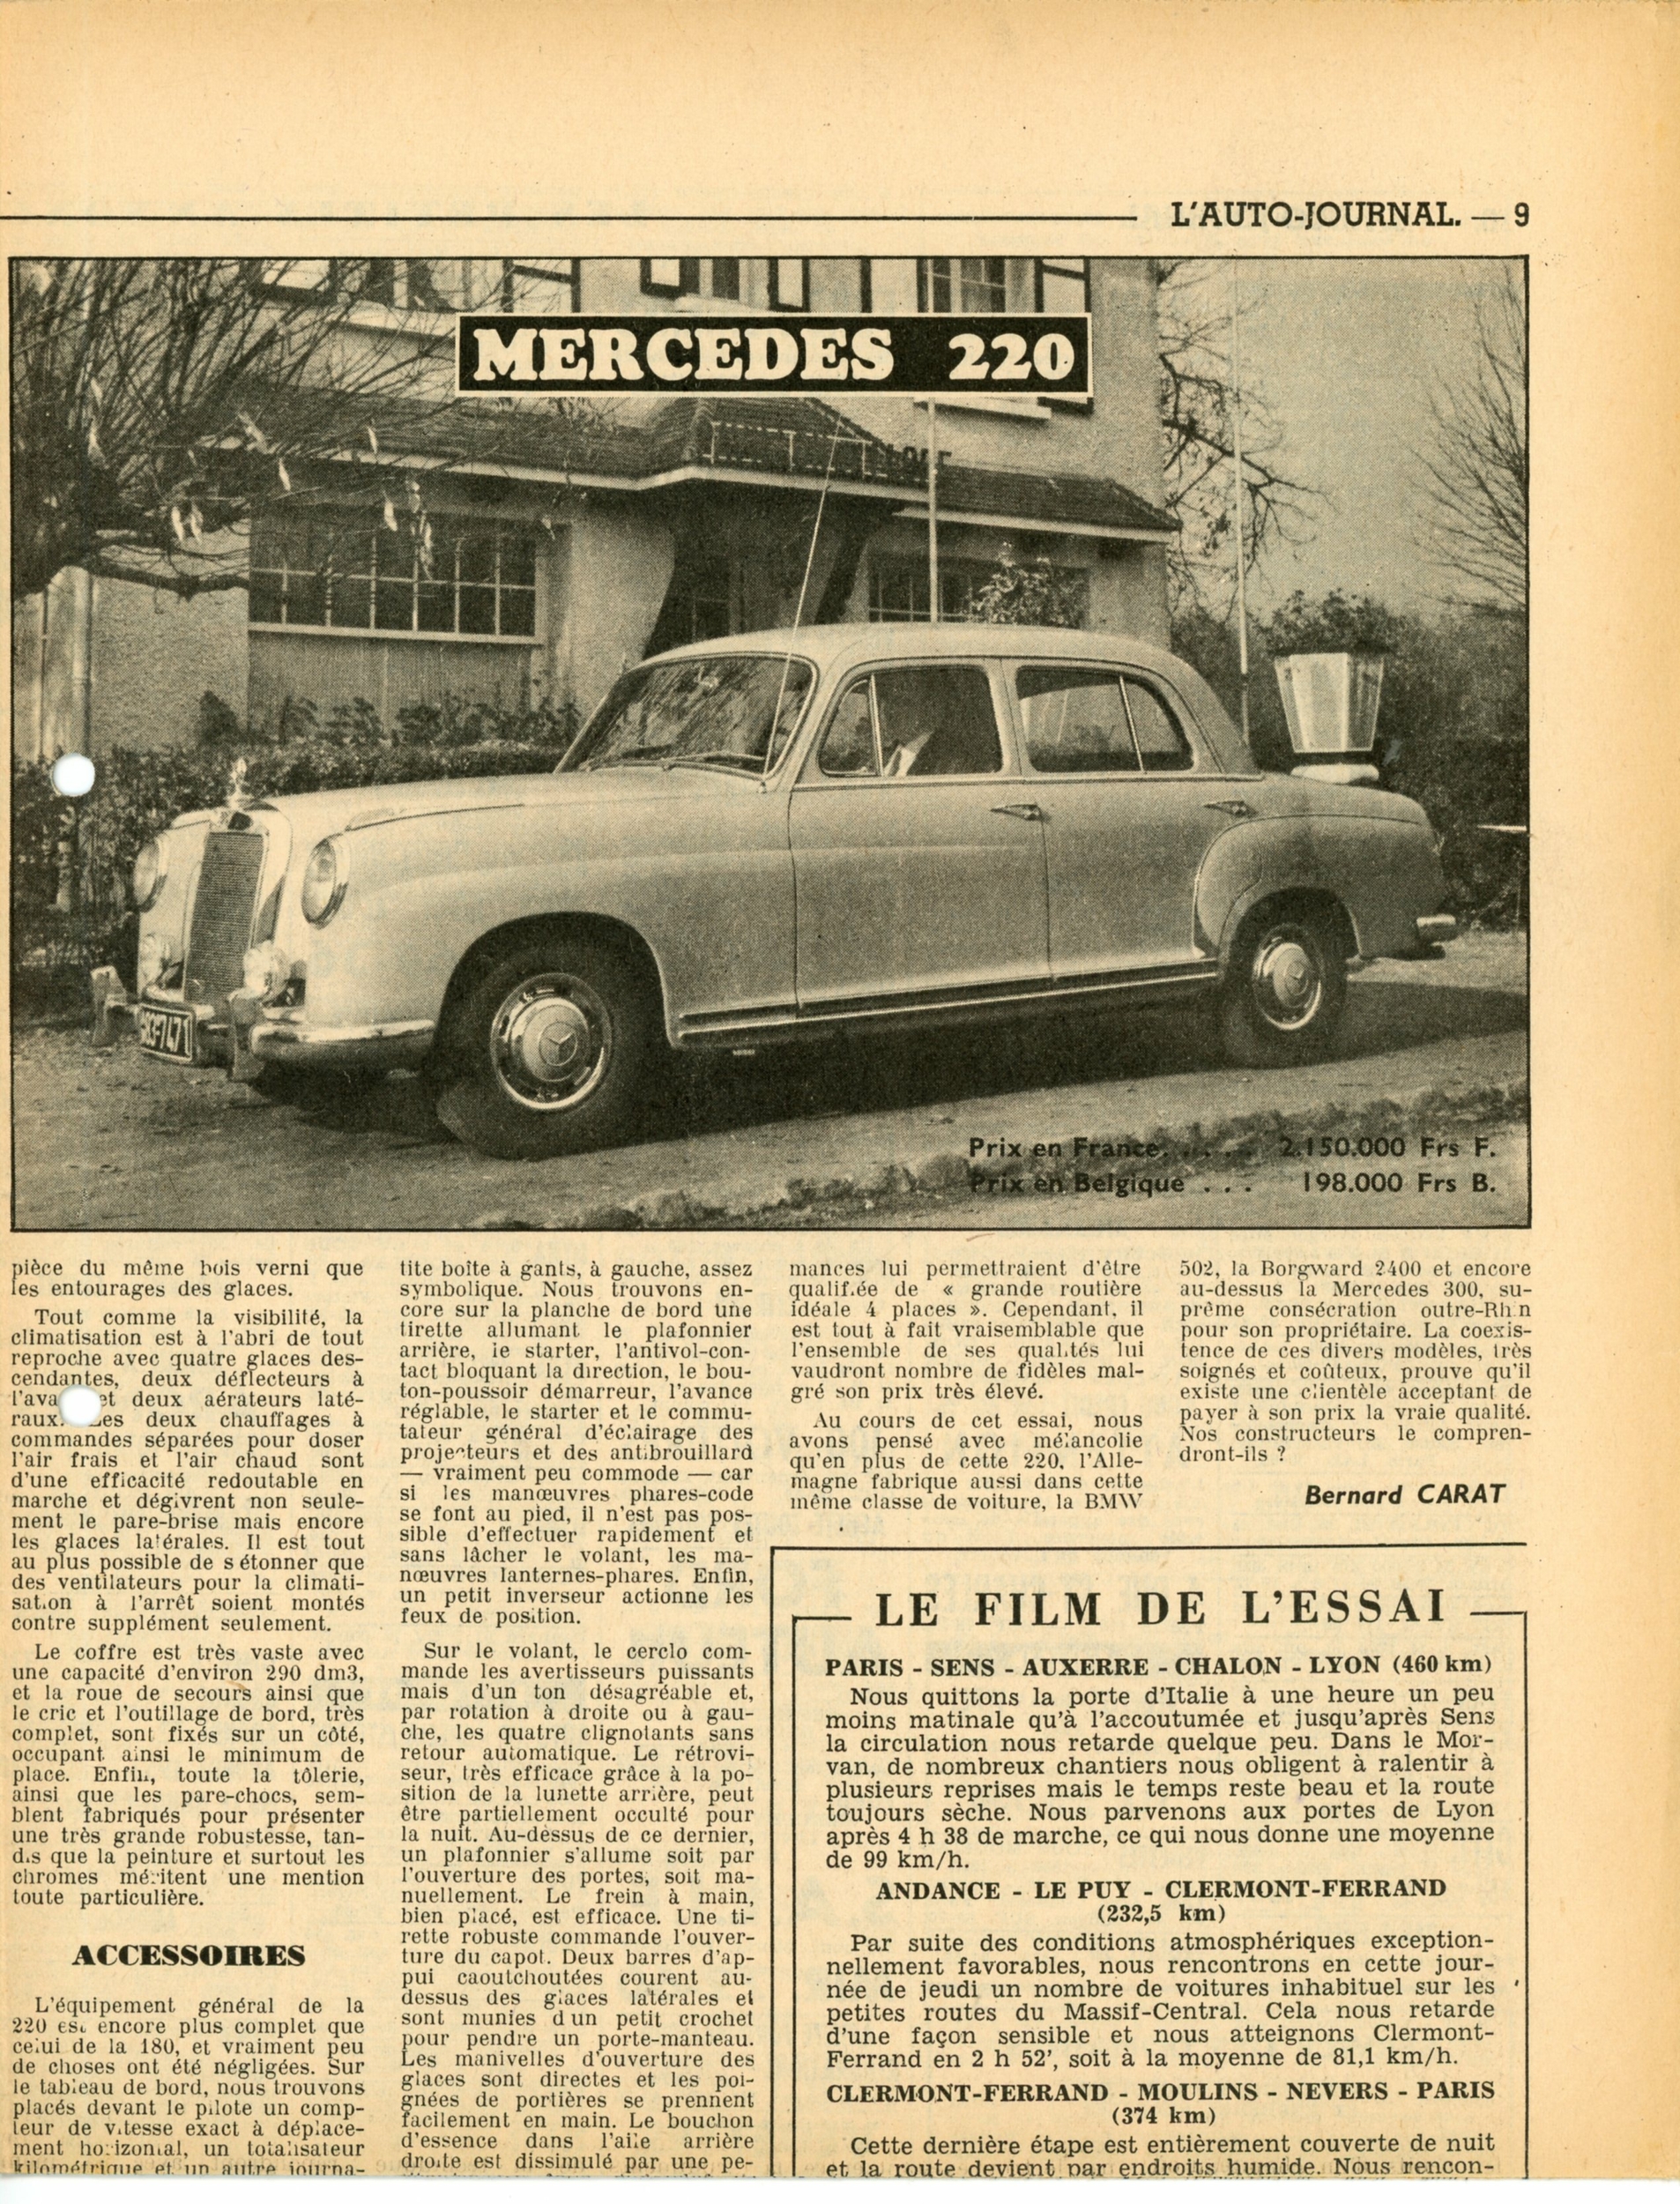 MERCEDES-220-ARTICLE-PRESSE-LEMASTERBROCKERS-1954